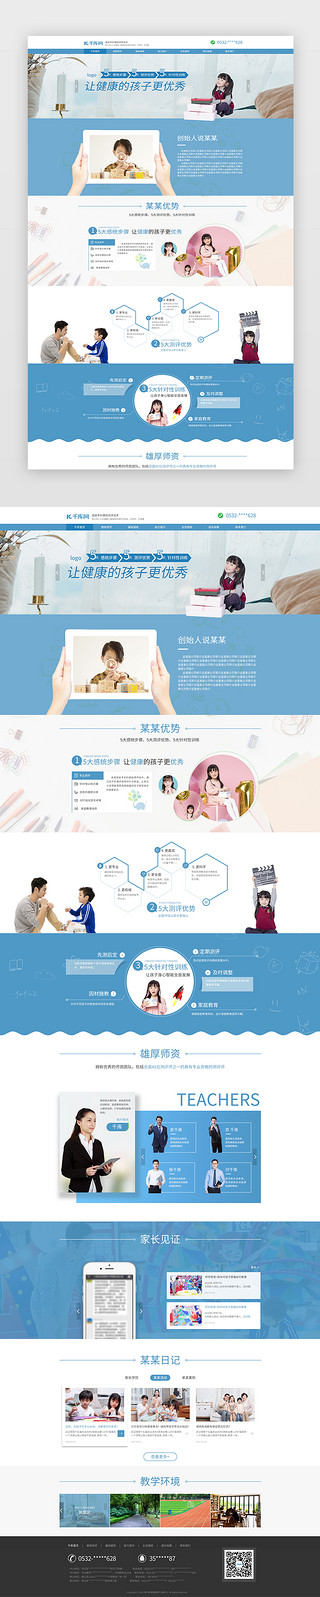 小清新边条UI设计素材_蓝色简约清新教育官网首页